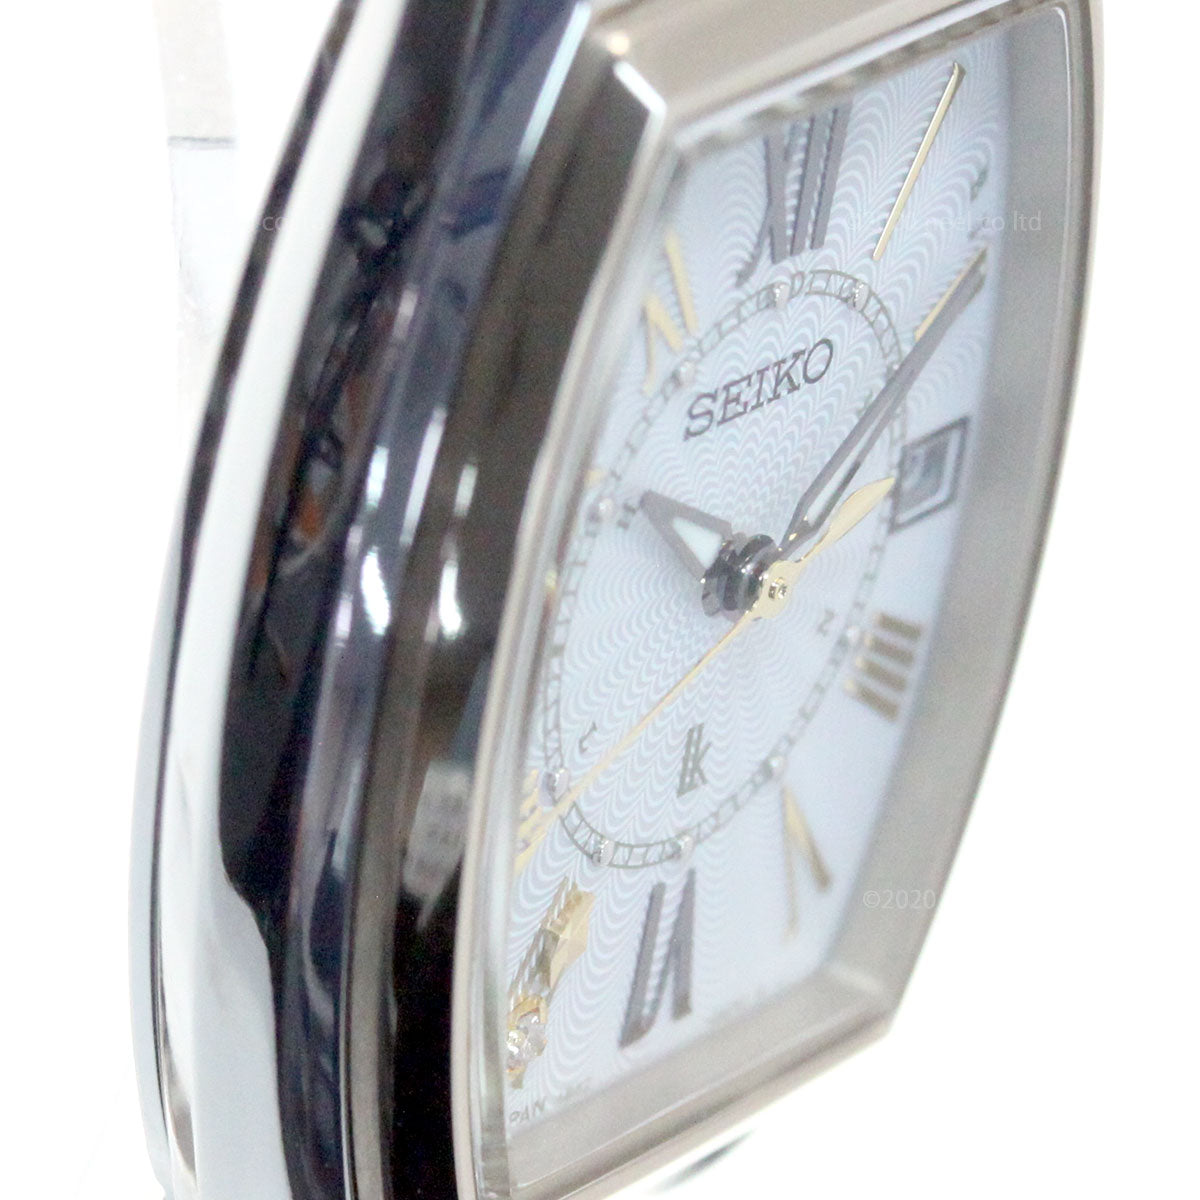 【新品】セイコー SEIKO 腕時計 レディース SSQW052 ルキア レディダイヤ レディゴールド 大人クラシック 電波ソーラー トノー Lady Diamond Lady Gold 電波ソーラー（1B32） ホワイトシェルxシルバー/シャンパンゴールド アナログ表示最大約18cmラグ幅